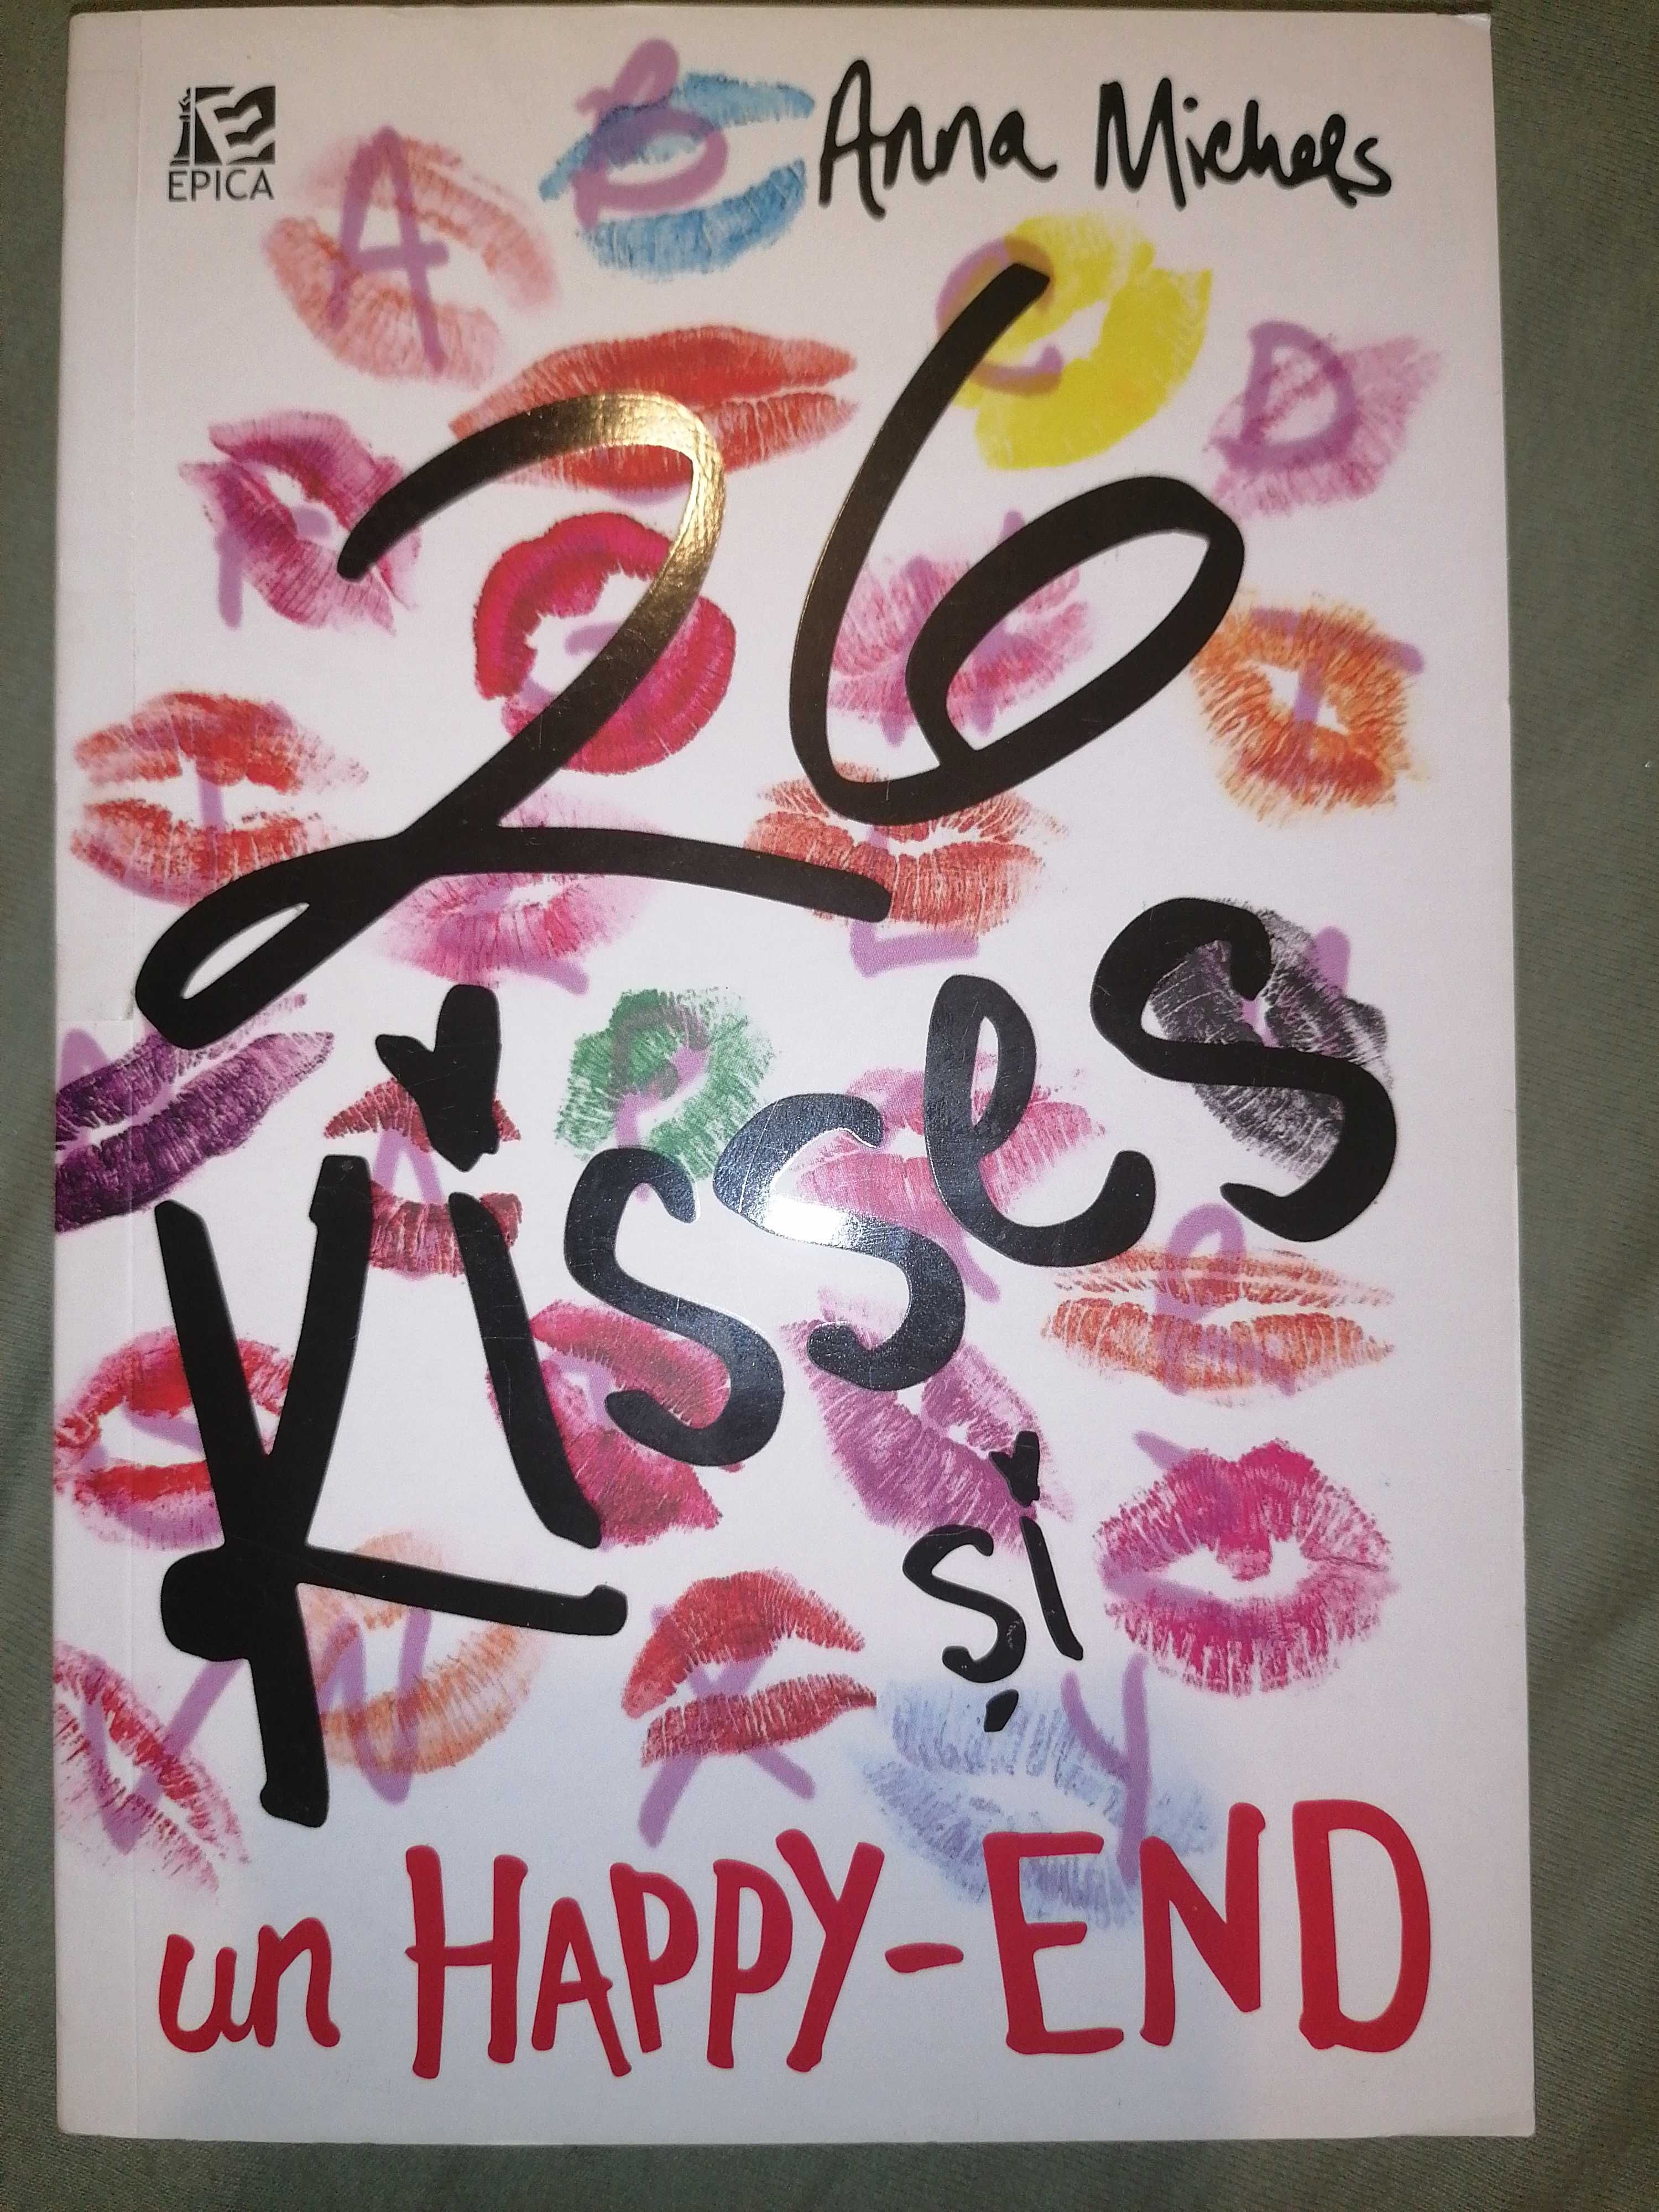 26 kisses si un happy-end de Anna Michels